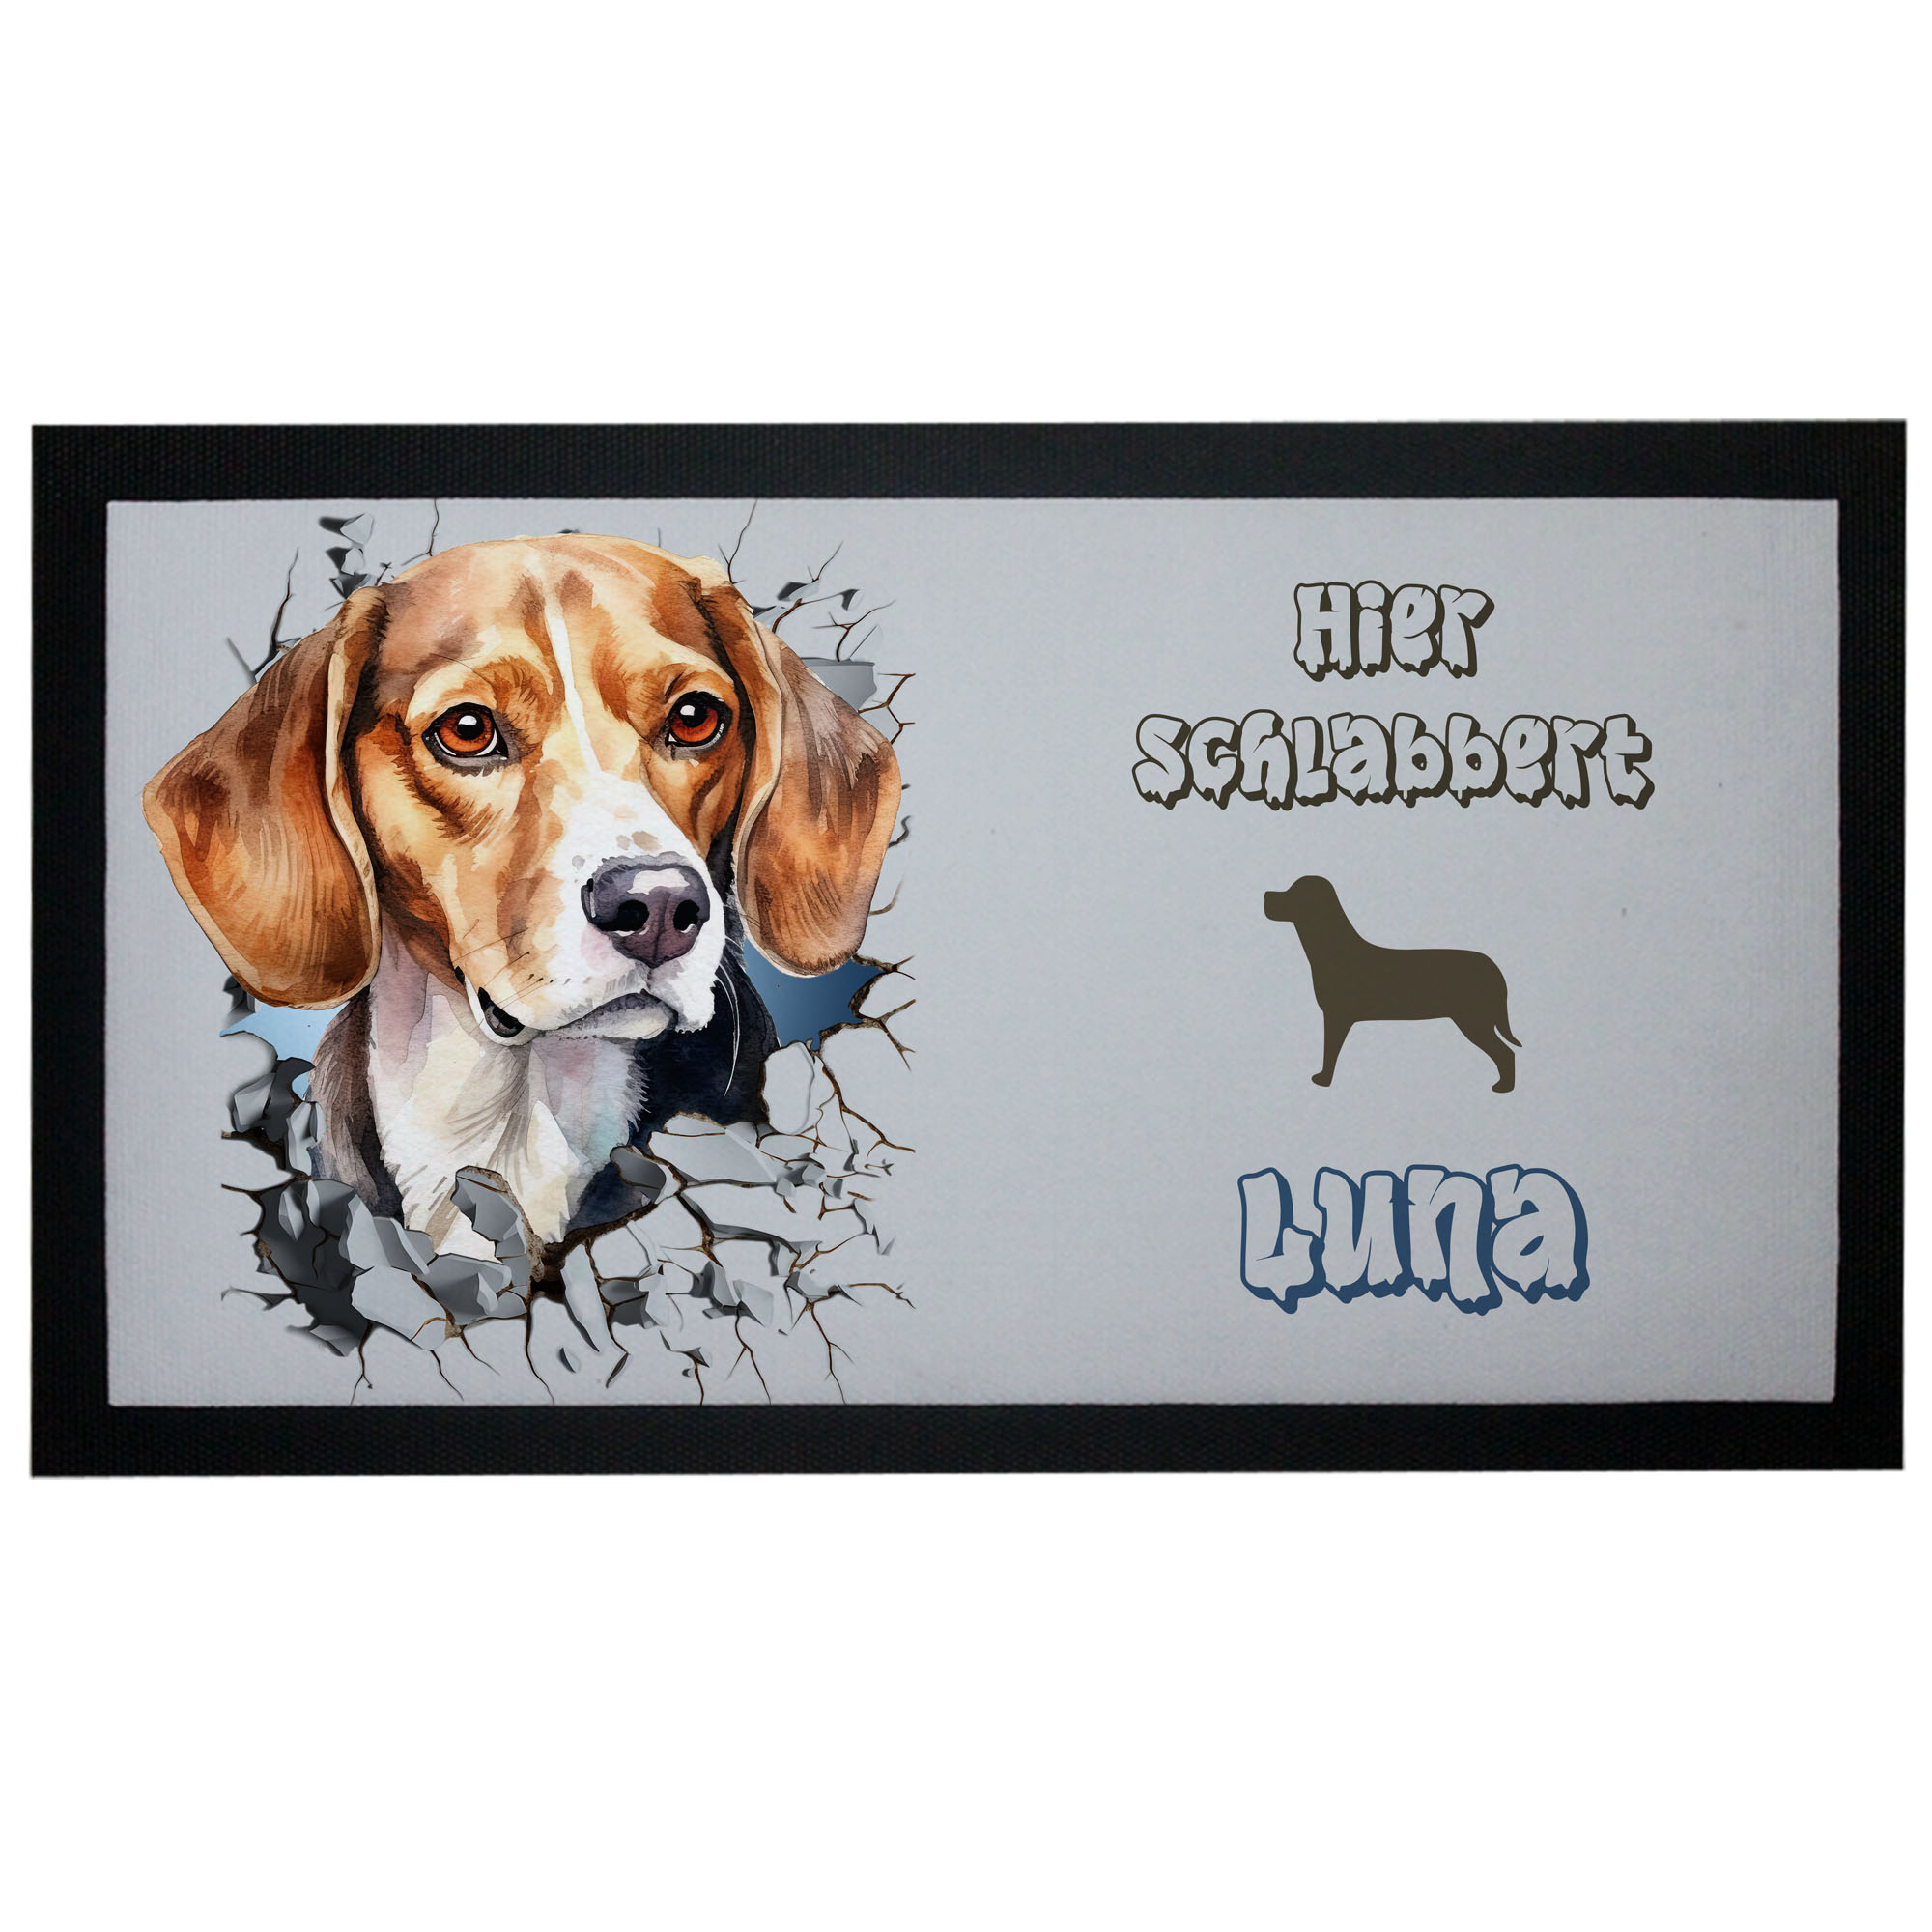 Napfunterlage Beagle mit Name Design Wanddurchbruch